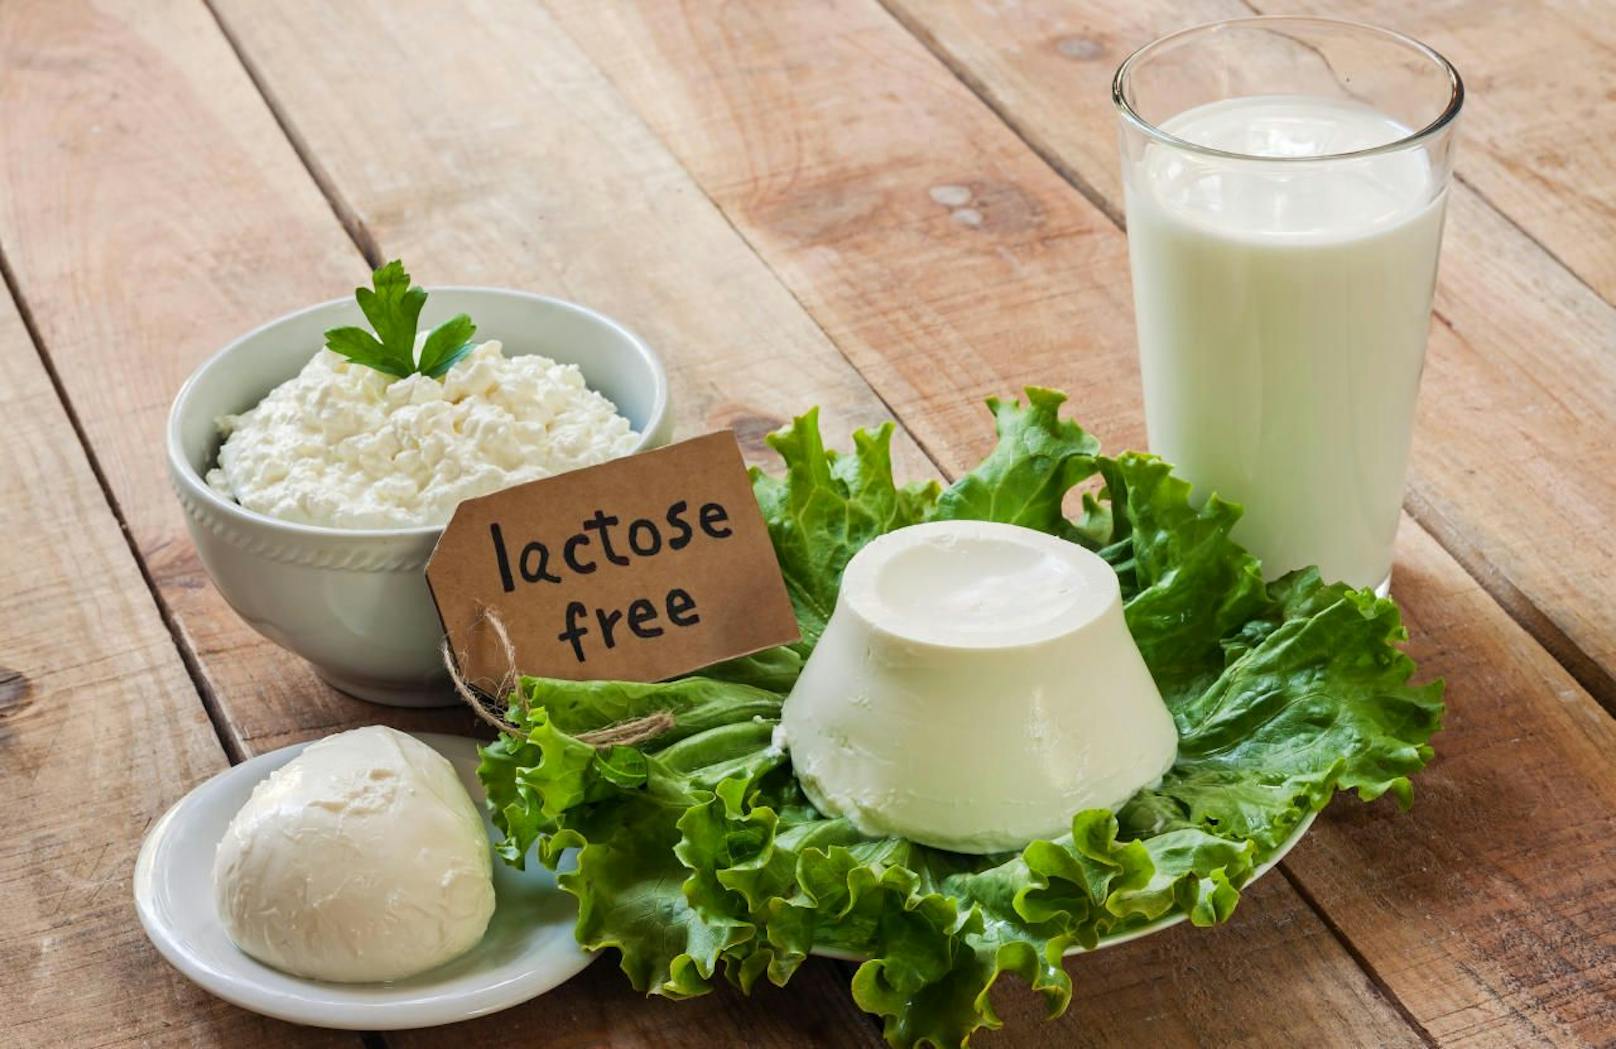 Laktosefreie Produkte gibt es bei Milch, Obers, Butter, Joghurt und Käse, aber auch Wurst, Schinken und anderen verarbeiteten Lebensmitteln.